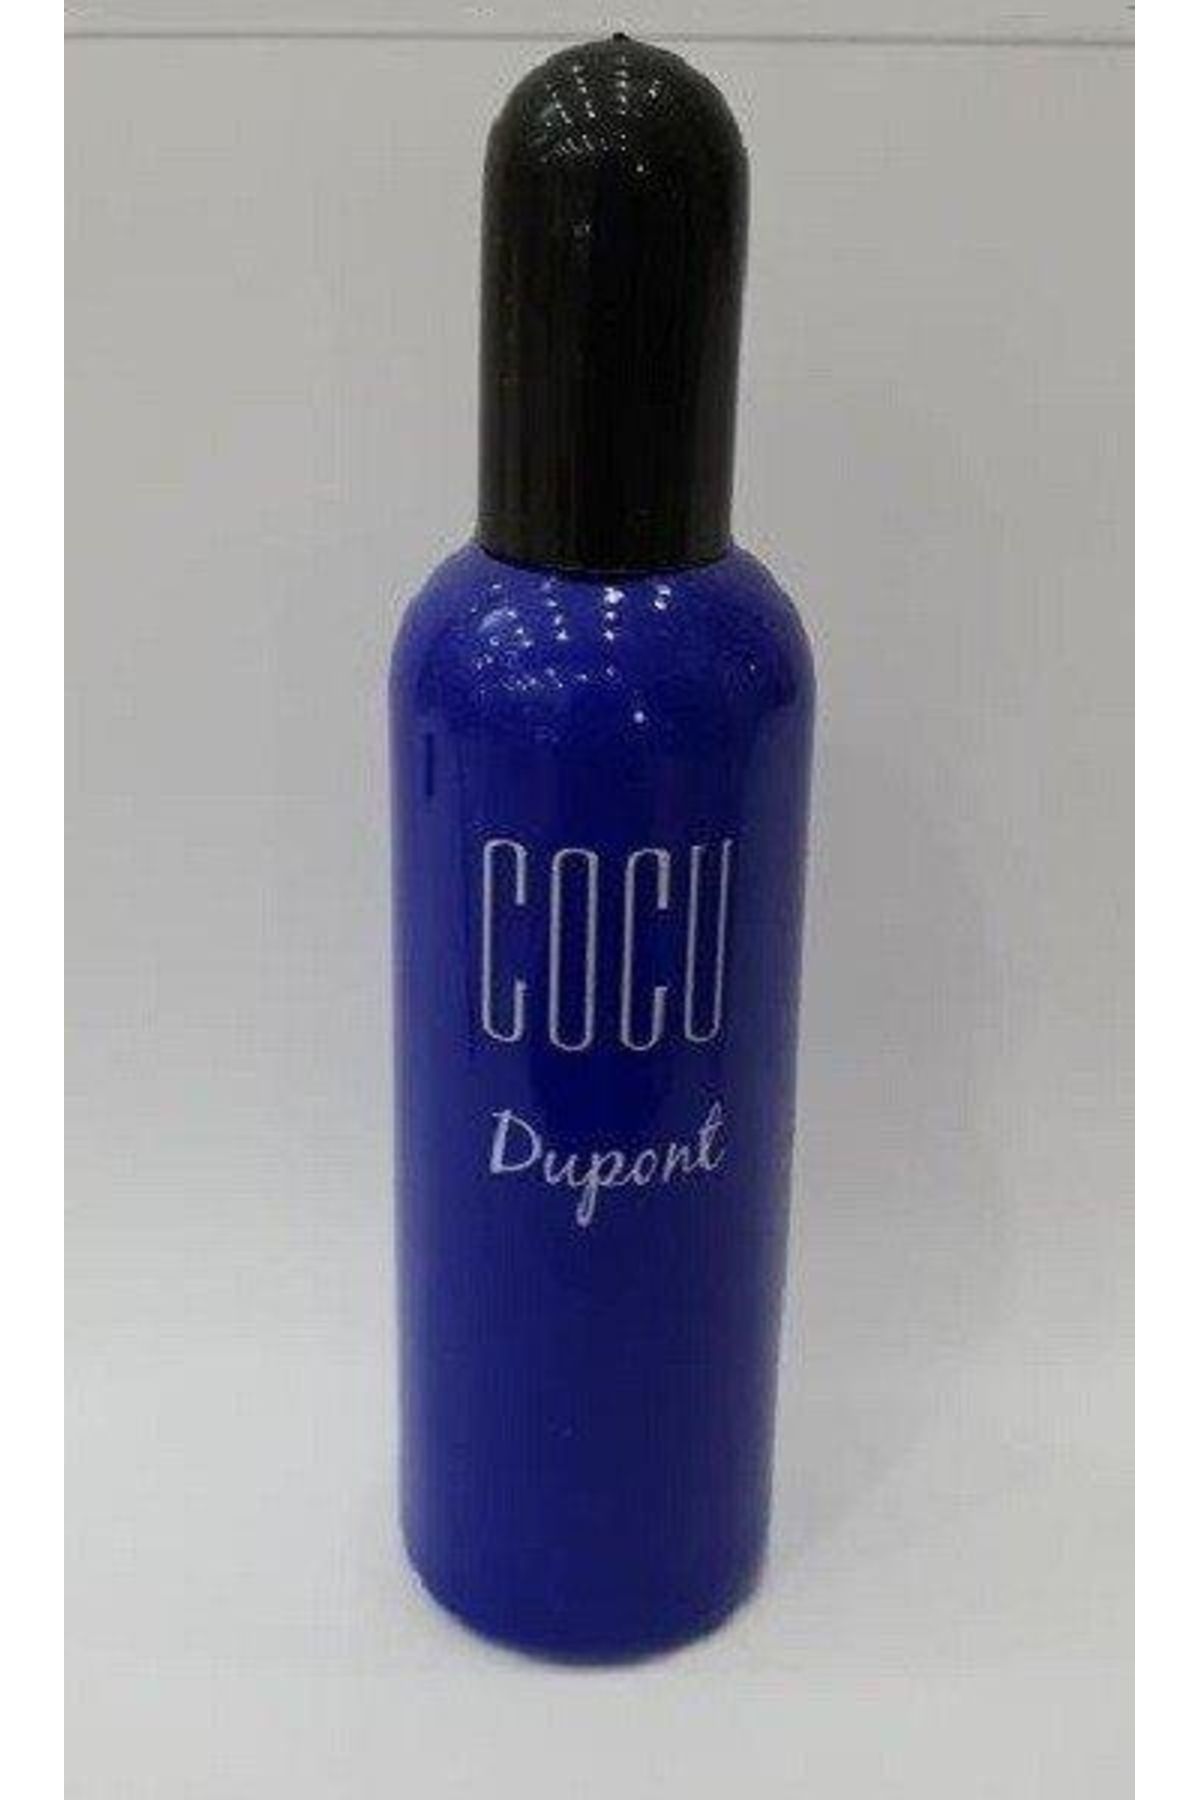 BENQ Cocu Dupont Kadın Parfümü